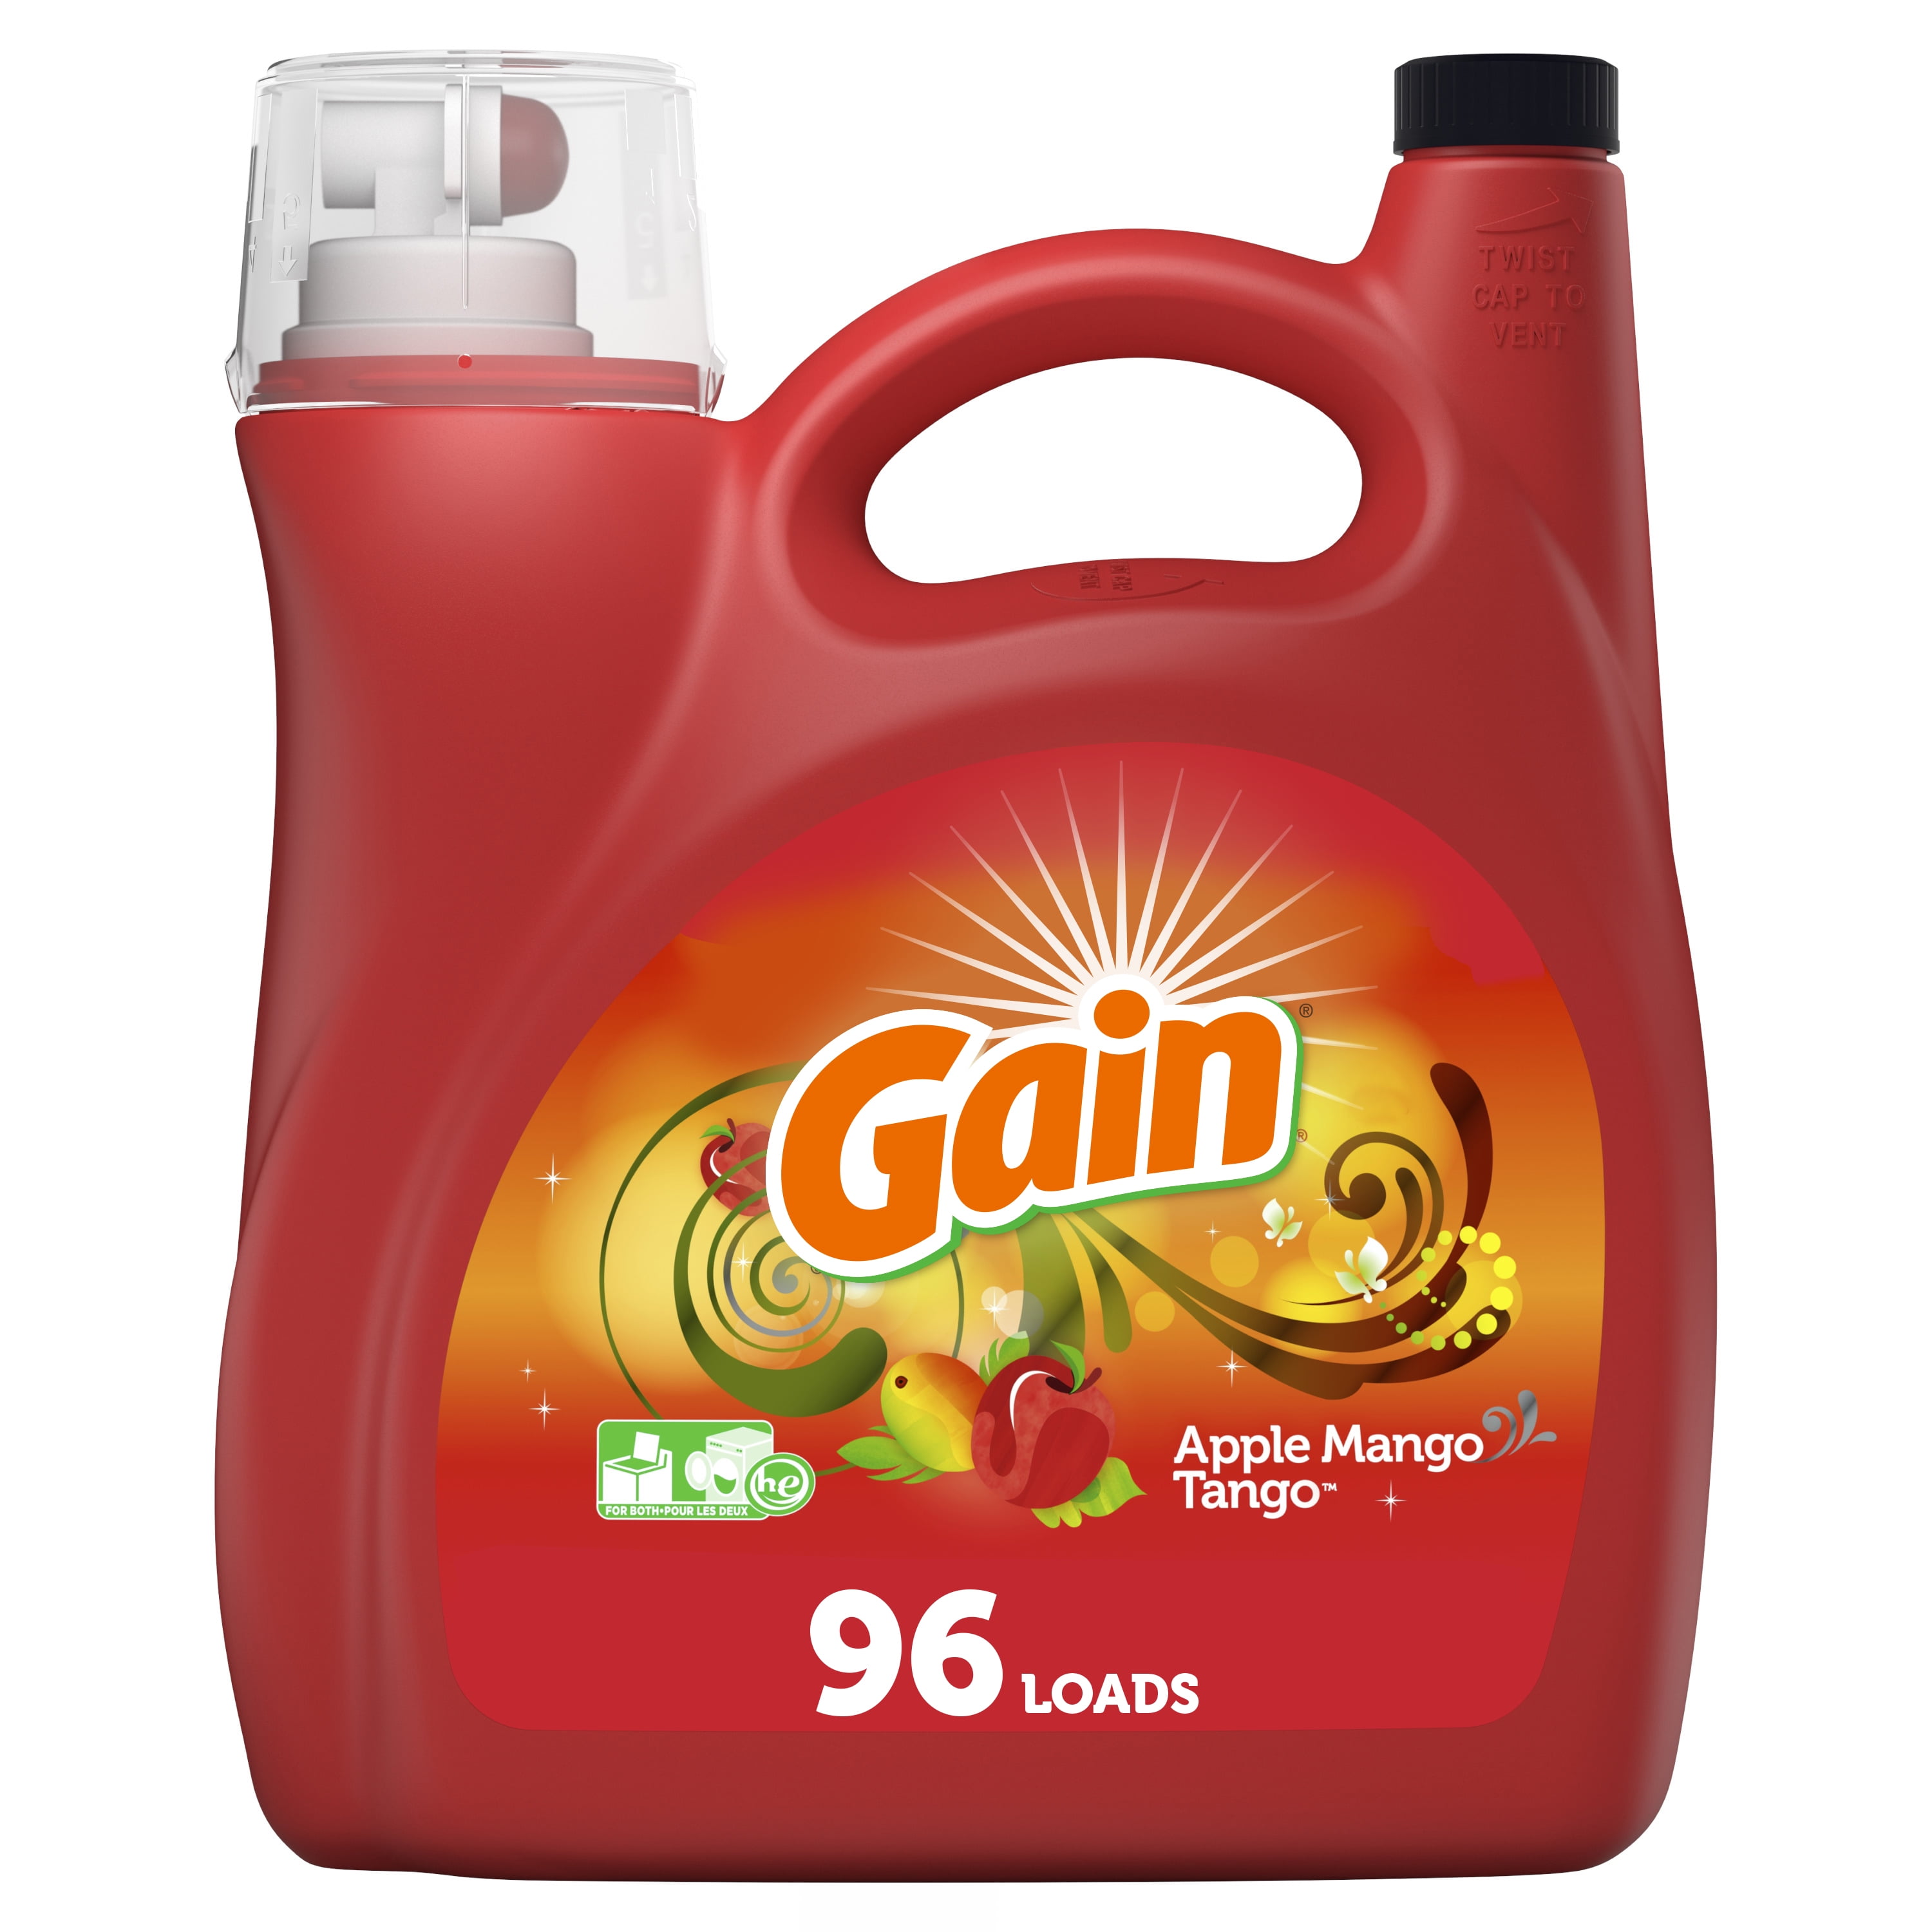 buy-gain-apple-mango-he-96-loads-liquid-laundry-detergent-150-fl-oz